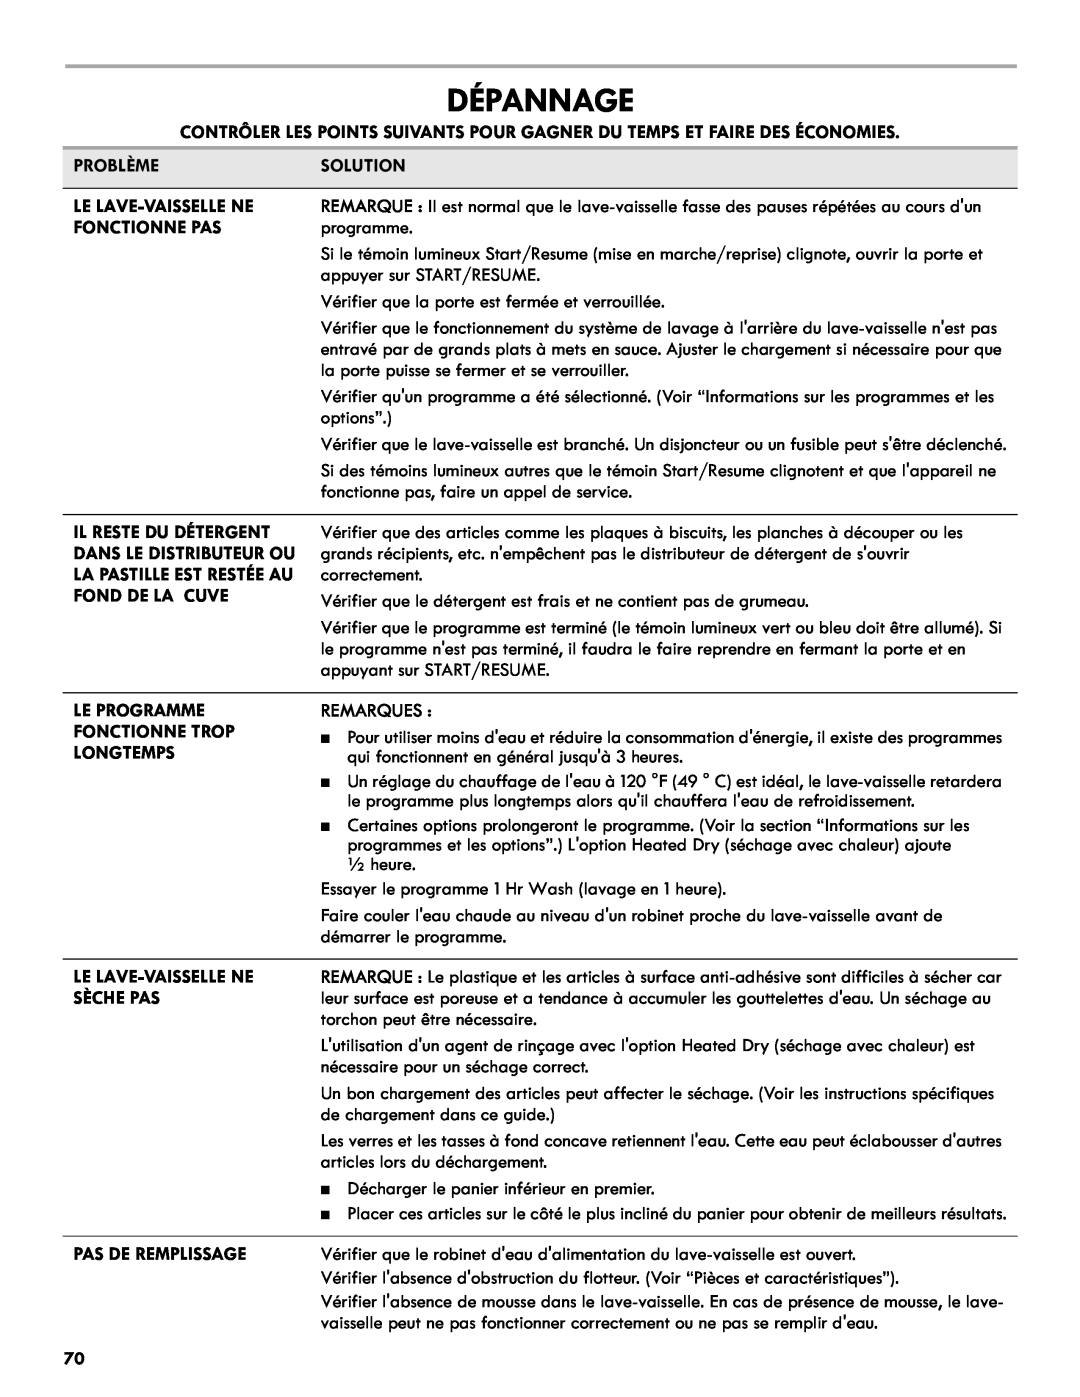 Kenmore 665.1301 manual Dépannage, Problèmesolution, Le Lave-Vaissellene, Fonctionne Pas, Remarques, Sèche Pas 